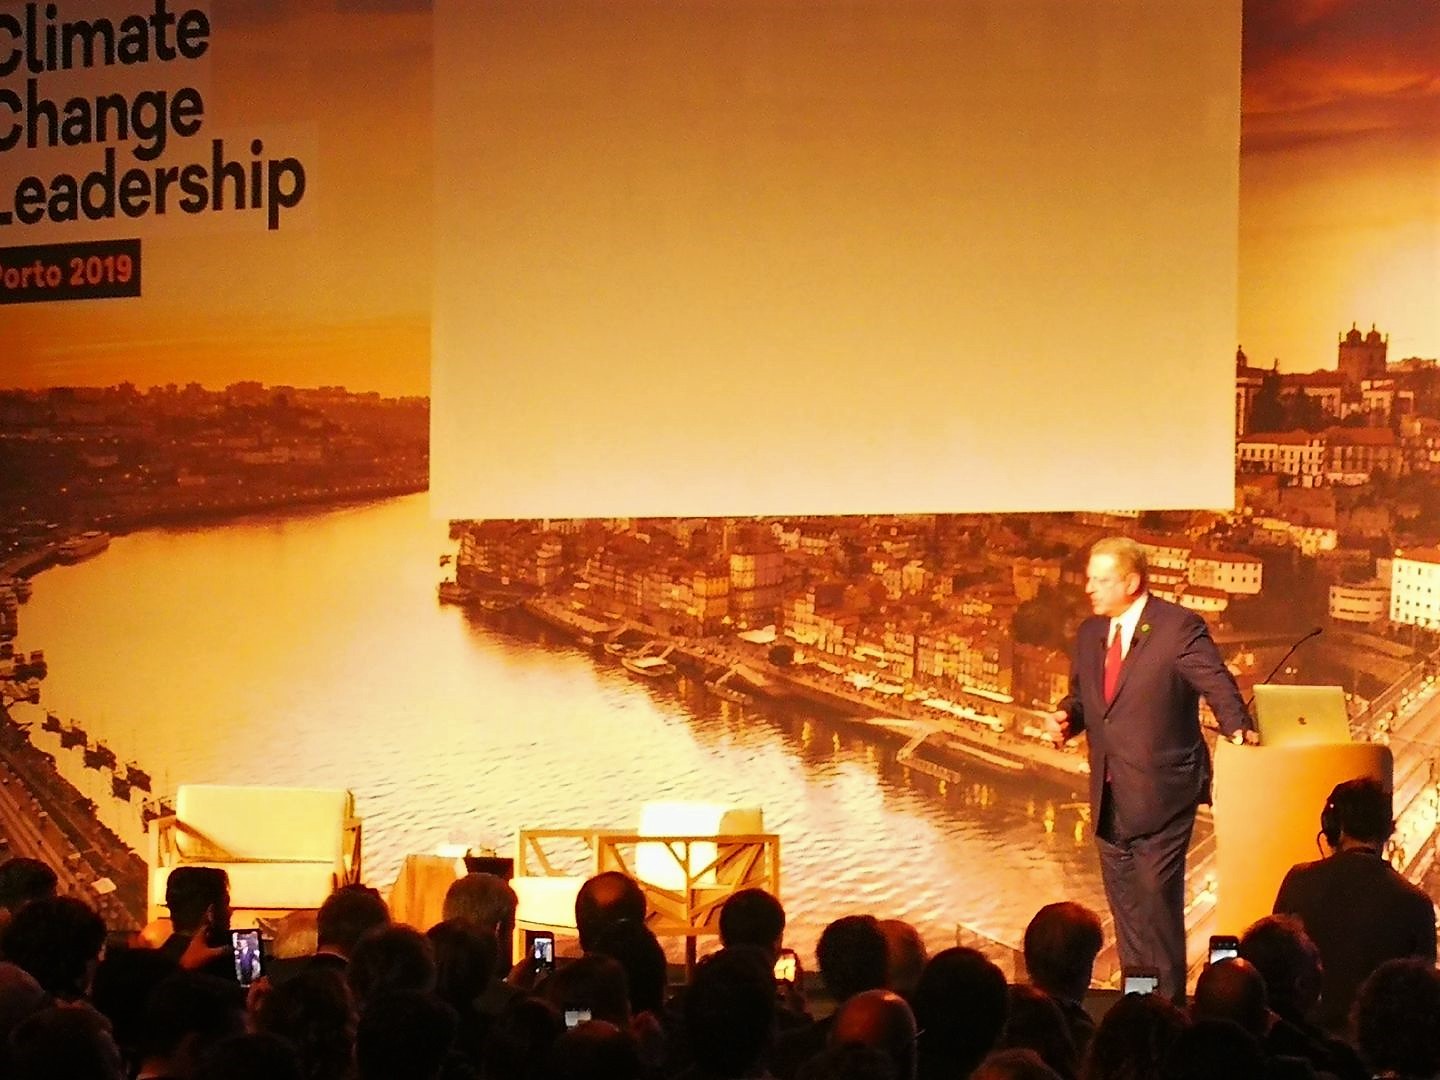 Conférence Climate Change Leadership avec Al Gore